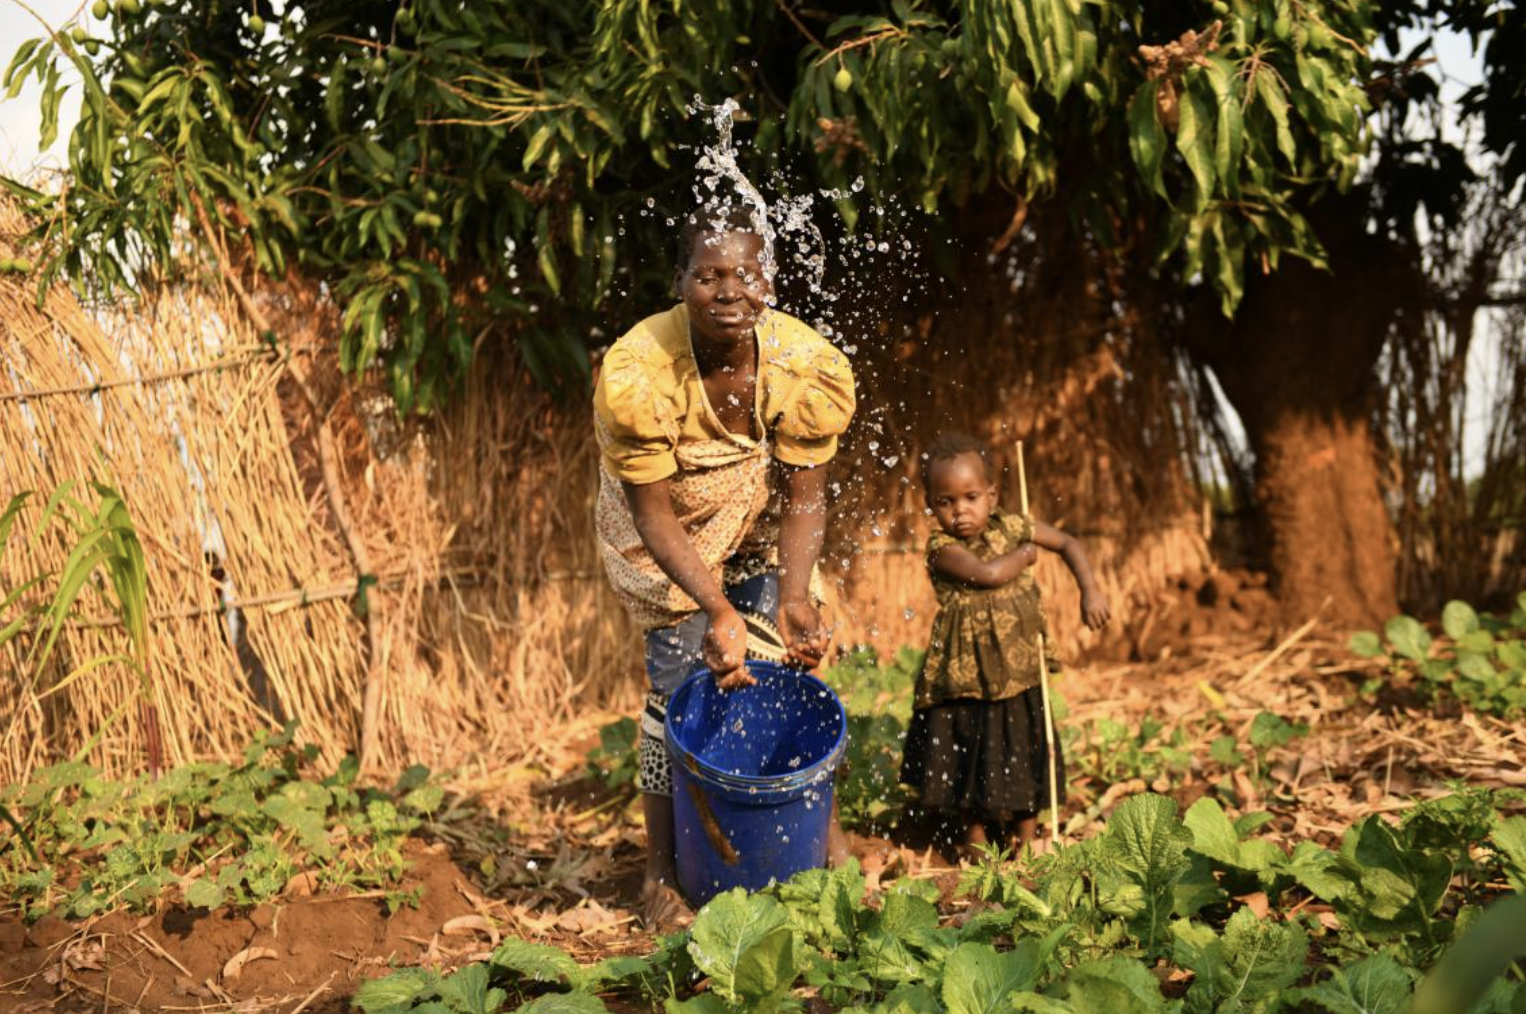 UNICEF Malawi/2020/Thoko Chikondi Sophie watering vegetables in her garden, beside her is her daughter